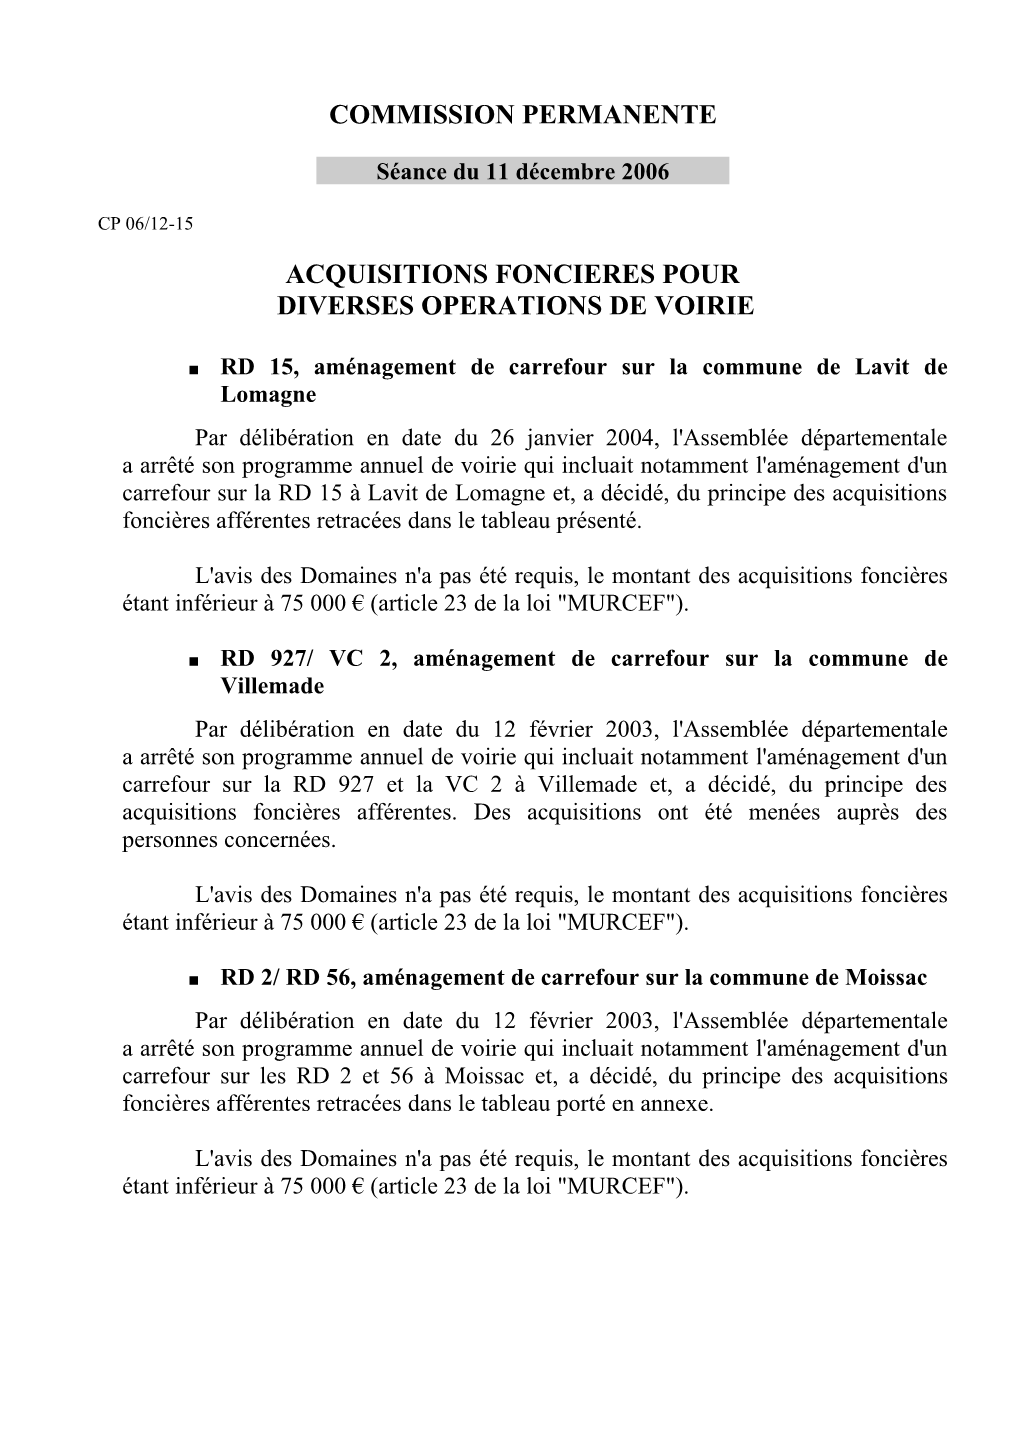 Commission Permanente Acquisitions Foncieres